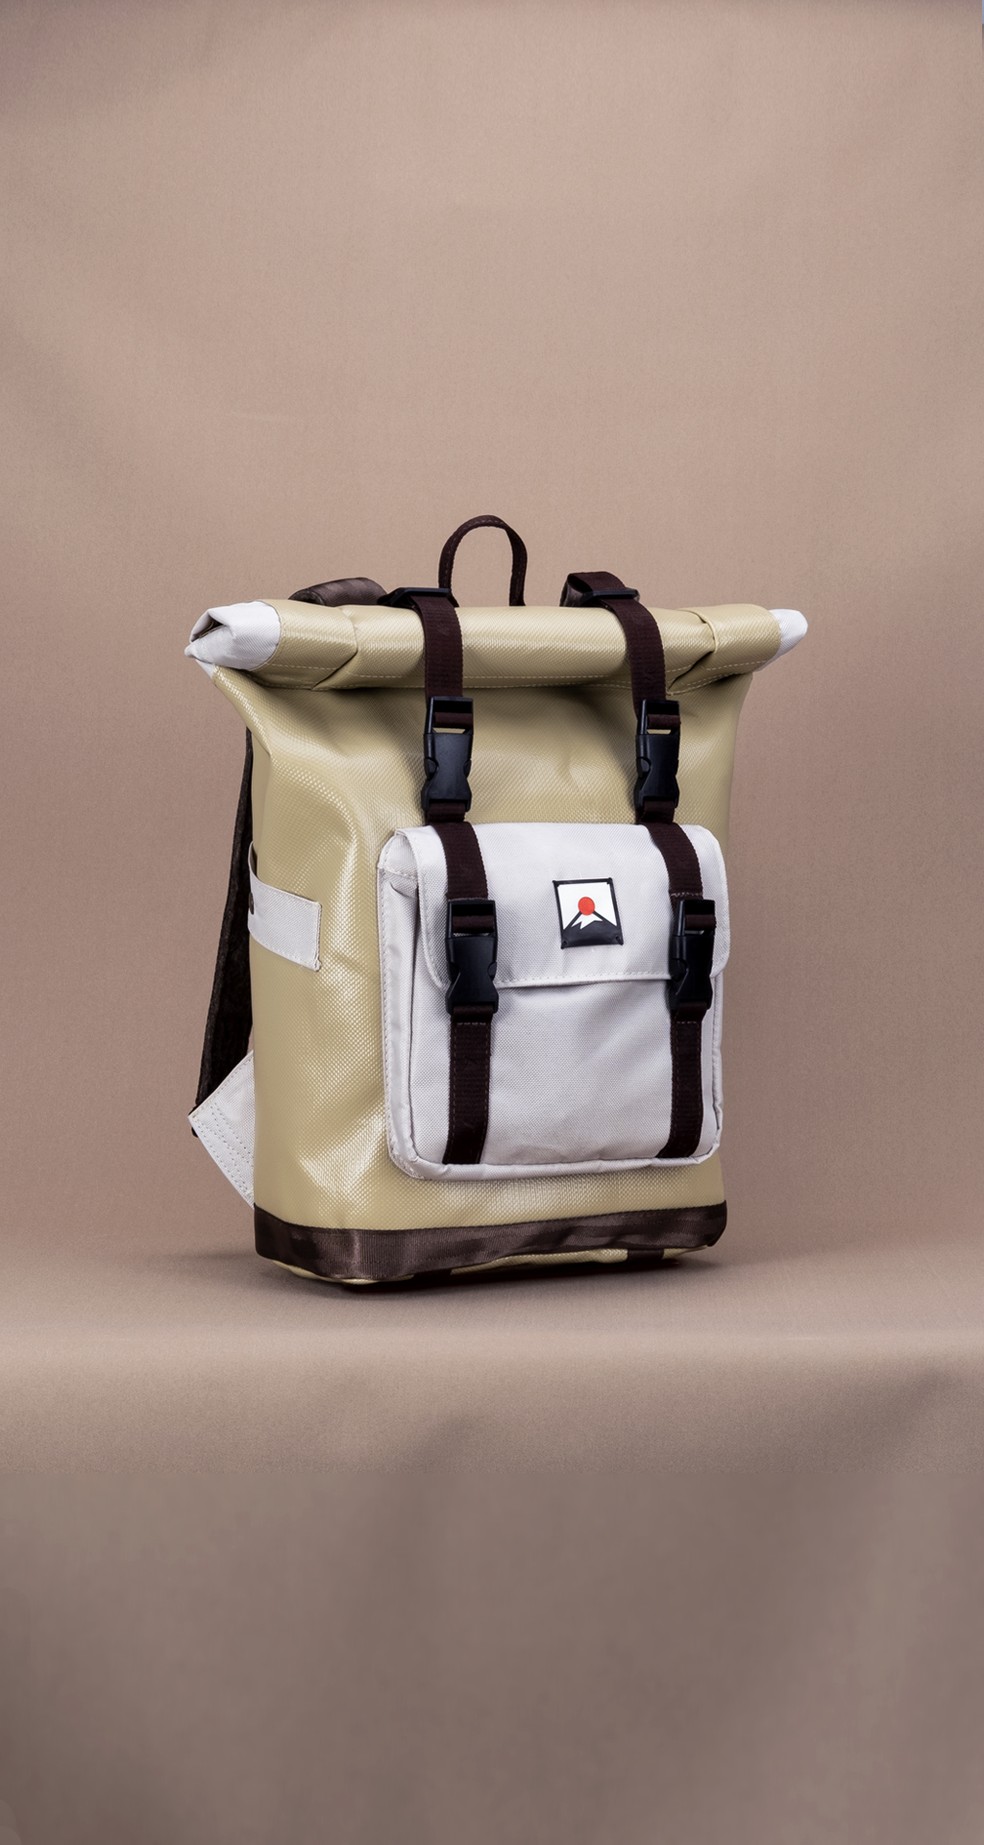 A mochila é o último modelo lançado — Foto: Divulgação